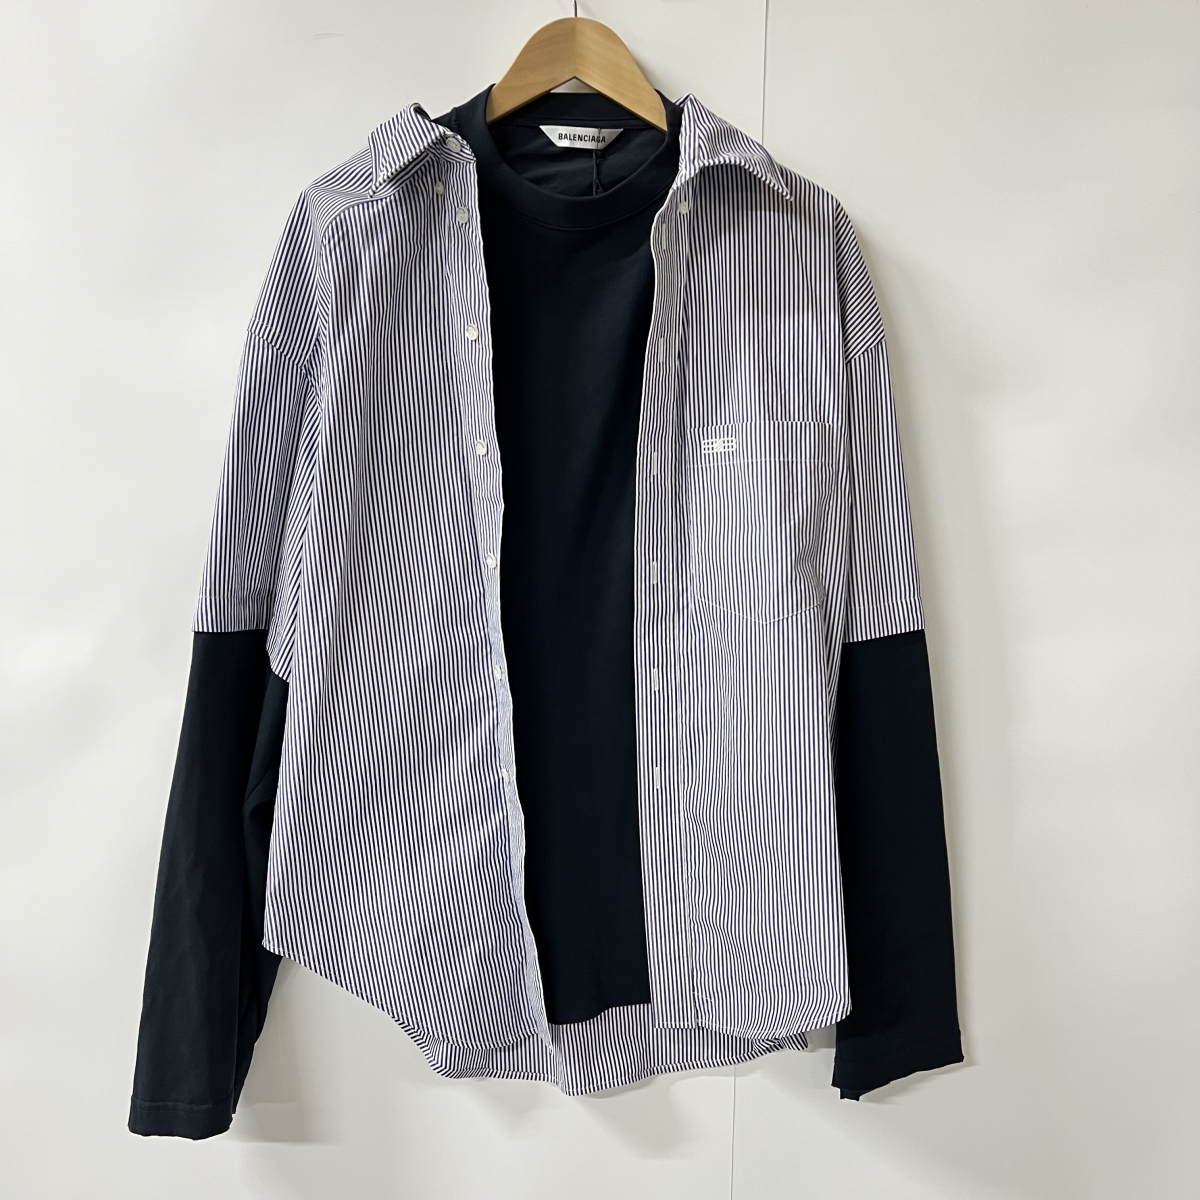 バレンシアガの21年製 ブルー×ホワイト BB ICON TROMPE LOEIL オープンカラーシャツの買取実績です。